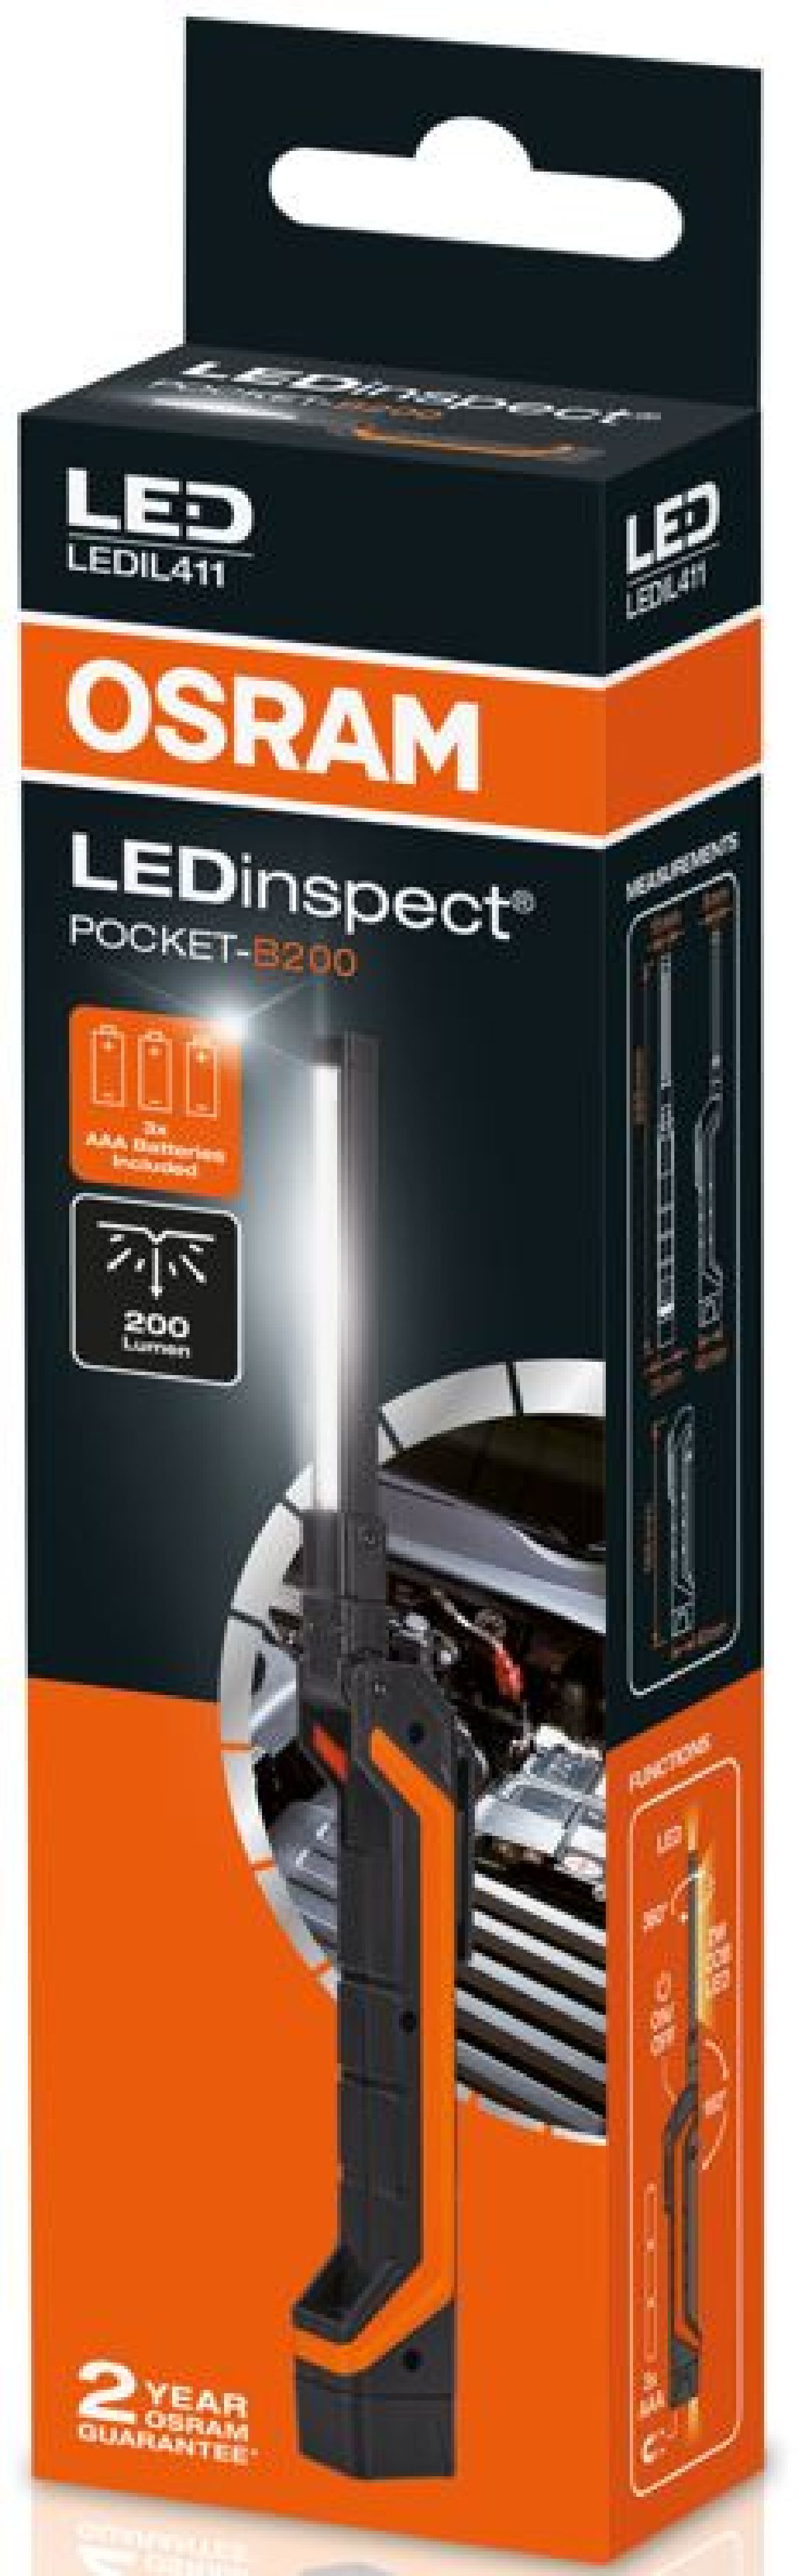 Osram LEDInspect POCKET-B200 1+1 LED's / 6500K